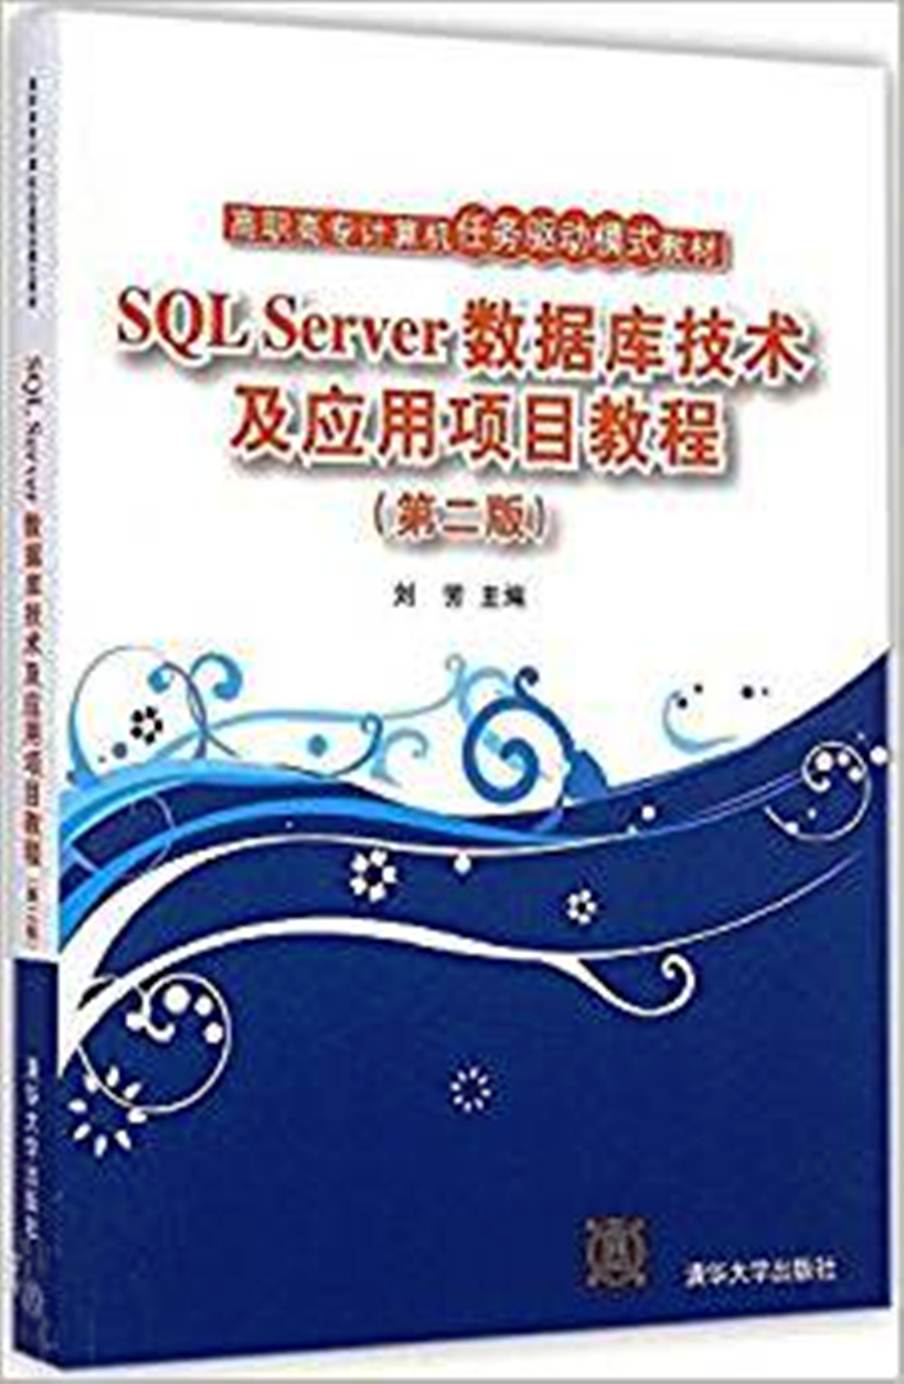 SQL Server資料庫技術及套用項目教程第二版